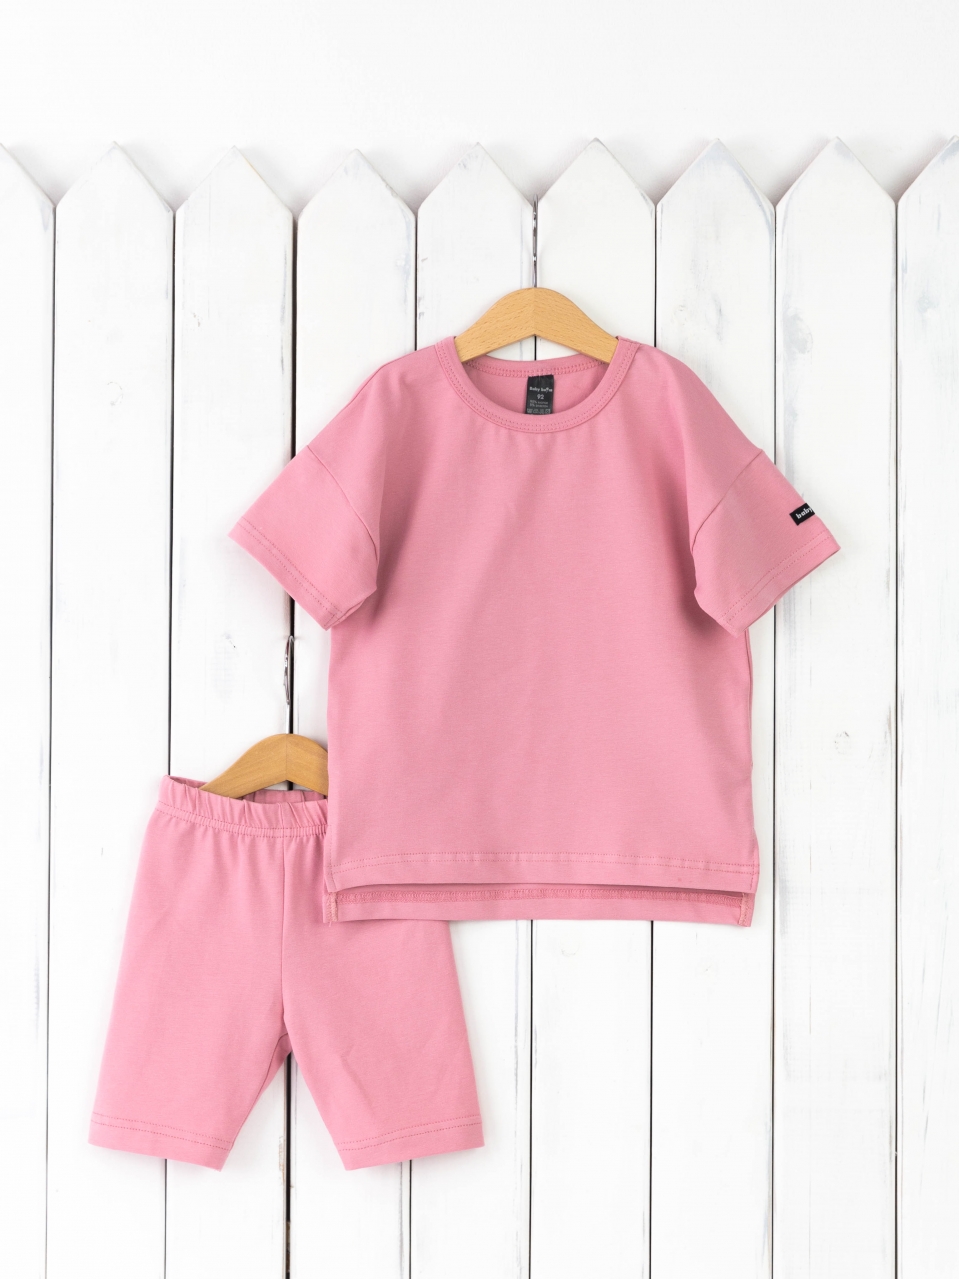 КД416/9-К Комплект детский р.116 футболка+легинсы/розовый зефир Бэби Бум - Орск 